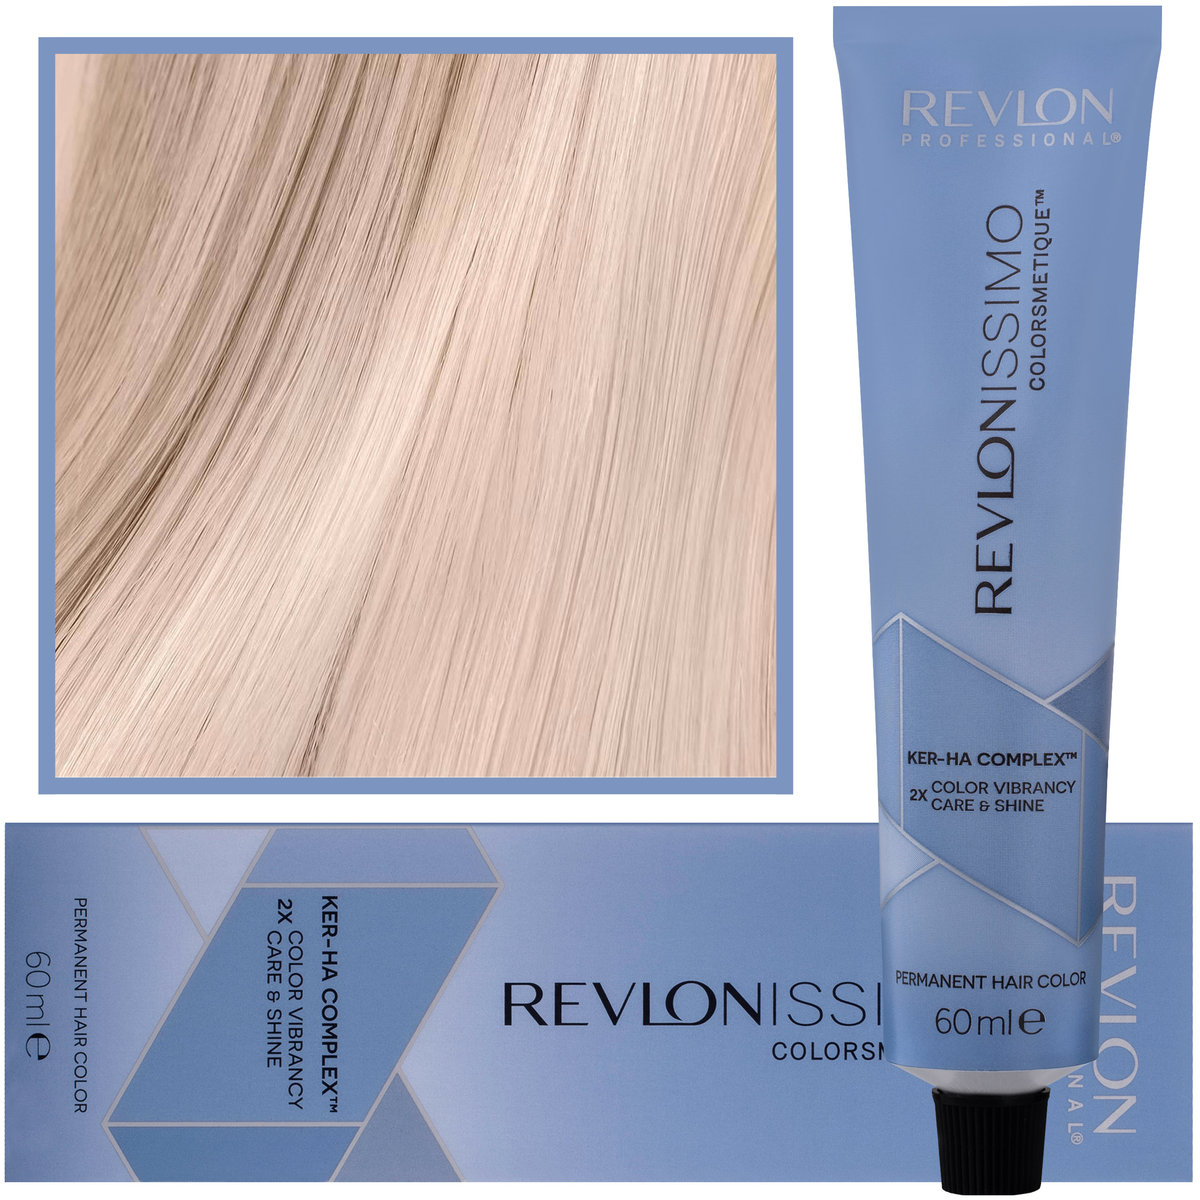 Revlon farba do włosów Nmt 60ml + Utleniacz Envie